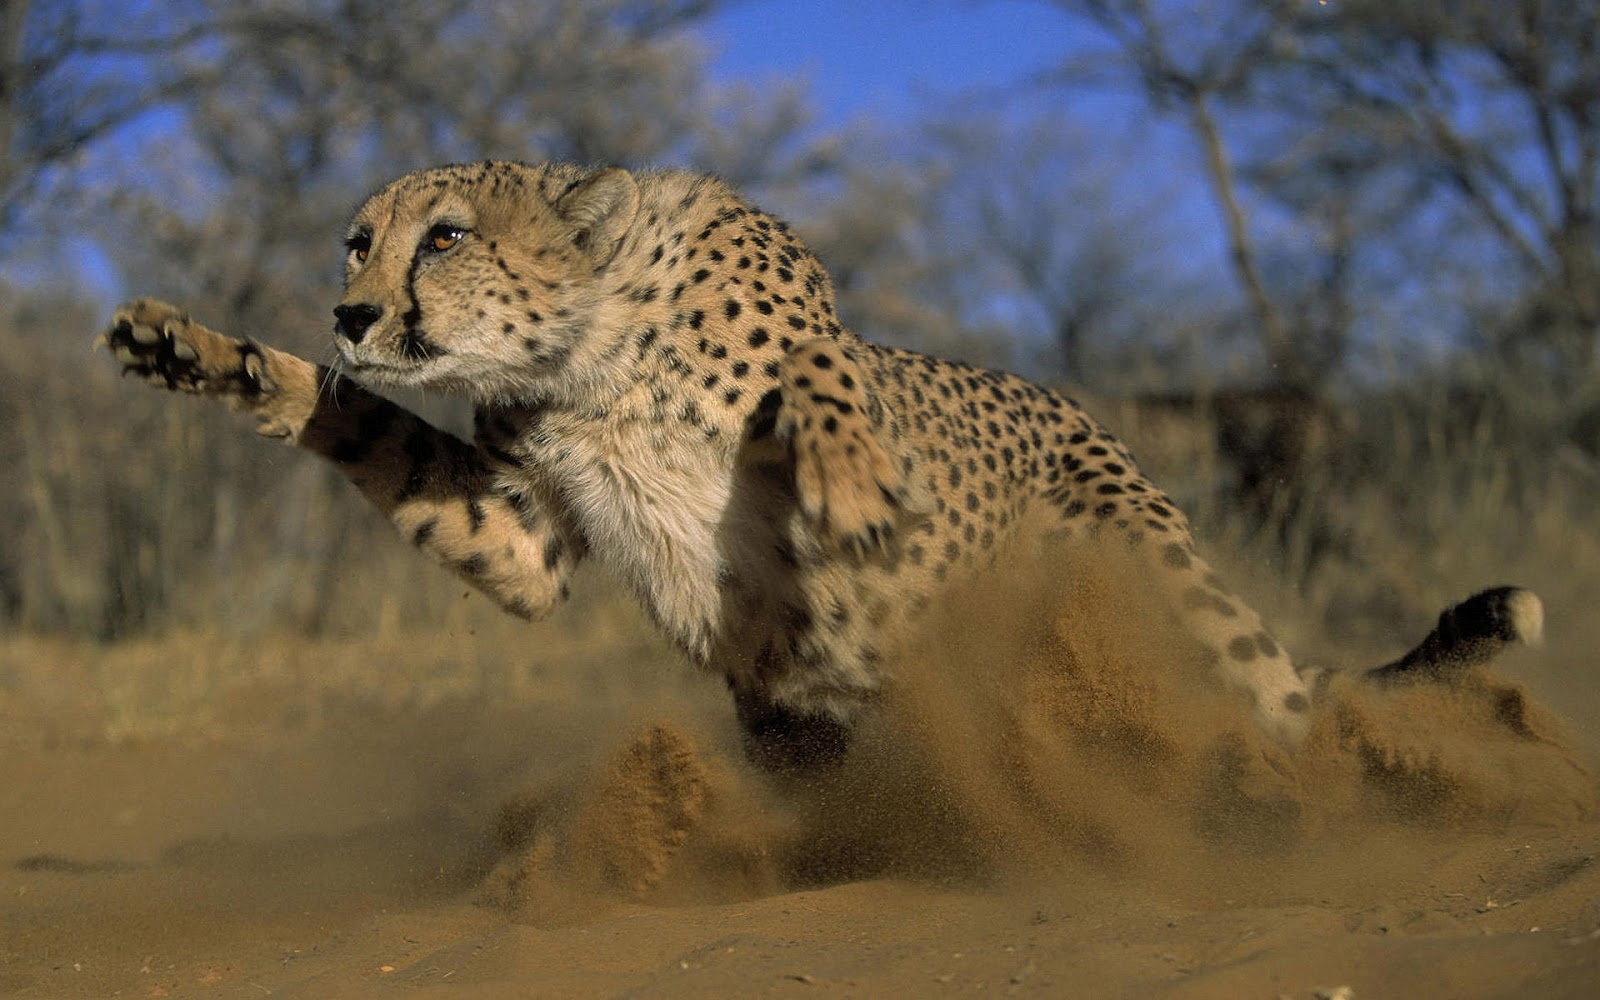 HD animal wallpaper with a attacking cheetah HD cheetah wallpapers